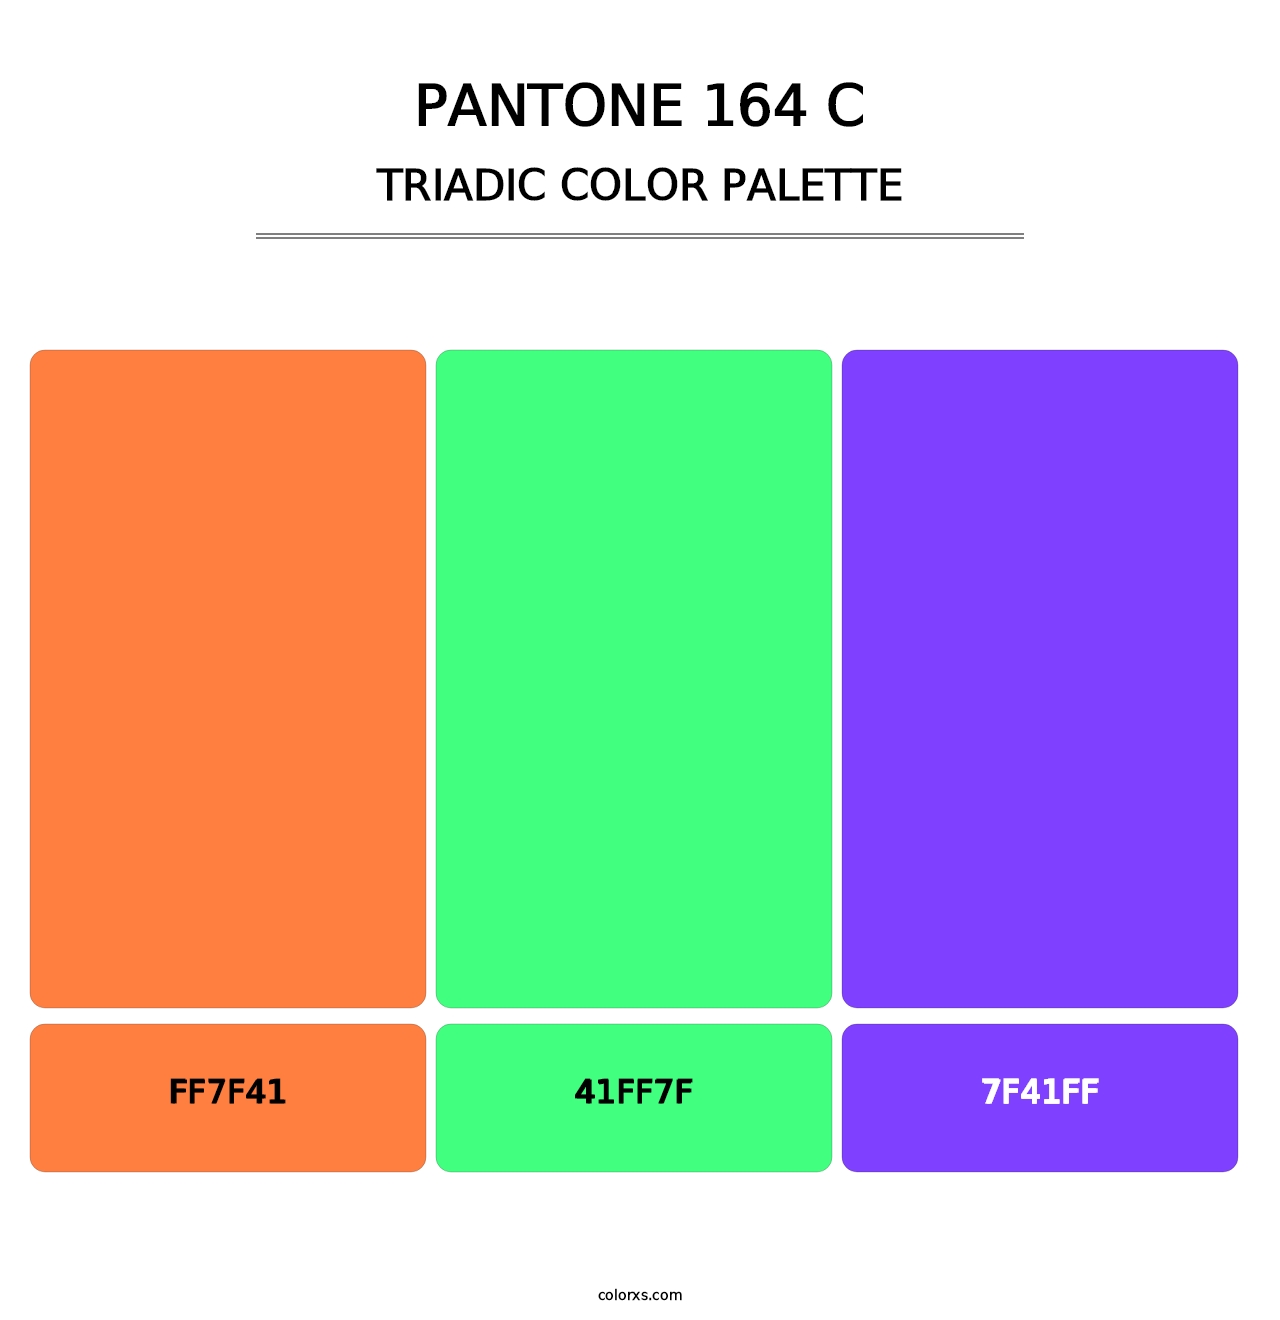 PANTONE 164 C - Triadic Color Palette